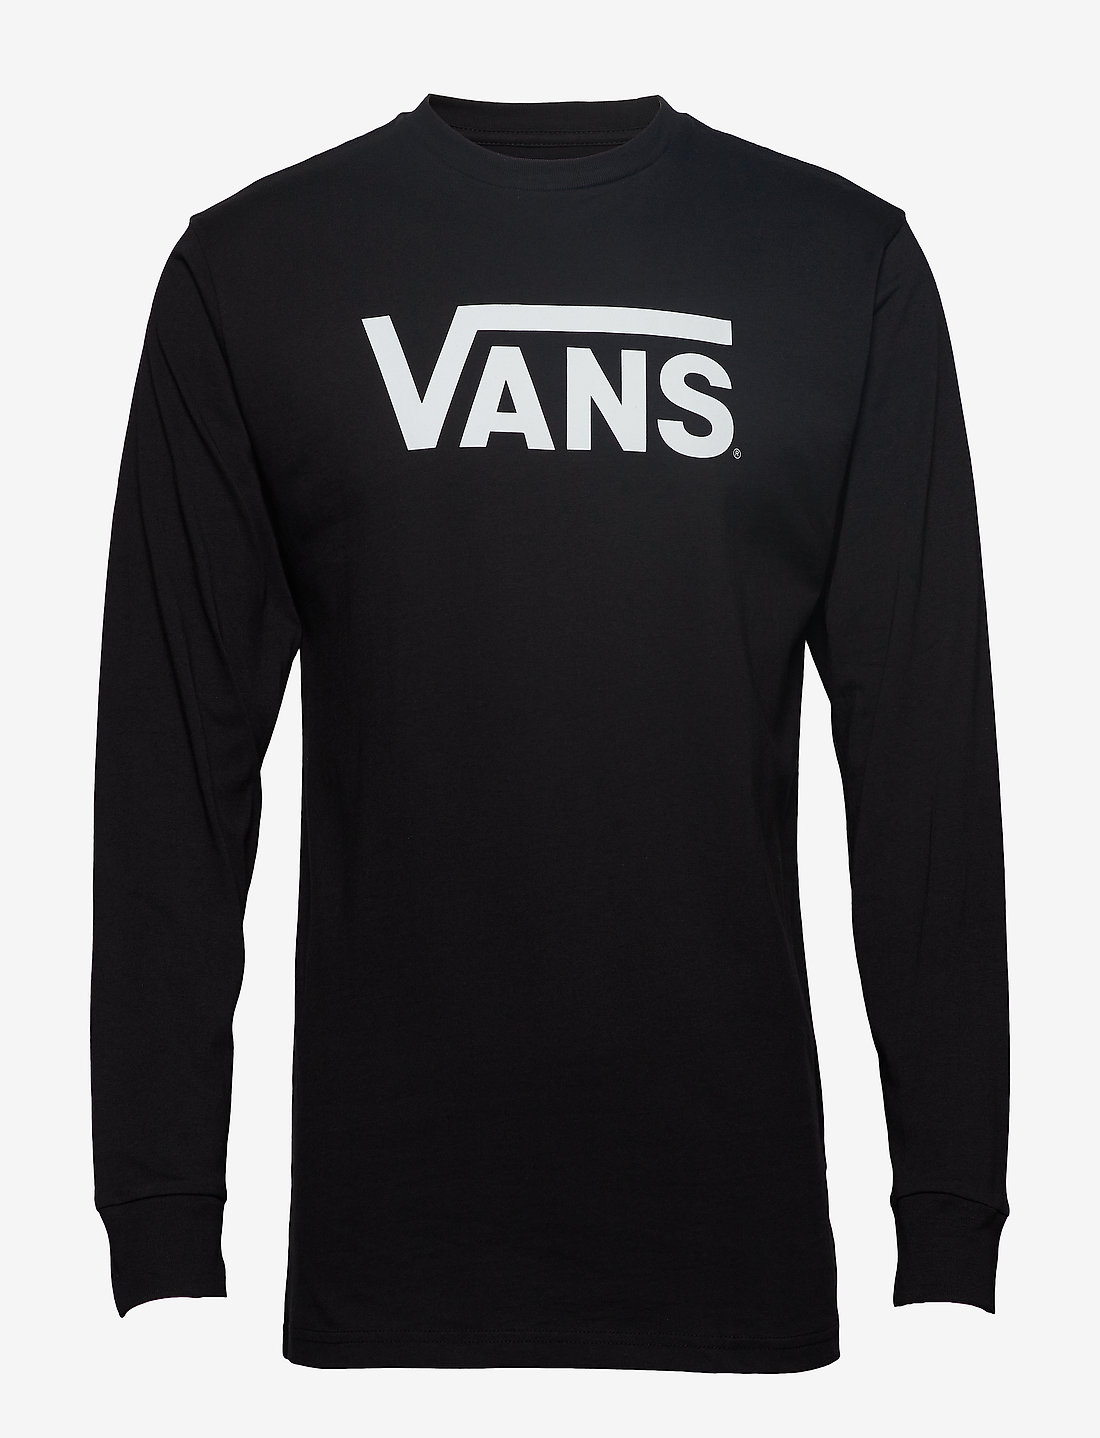 VANS Vans Classic Ls – t-shirts – einkaufen bei Booztlet Switzerland